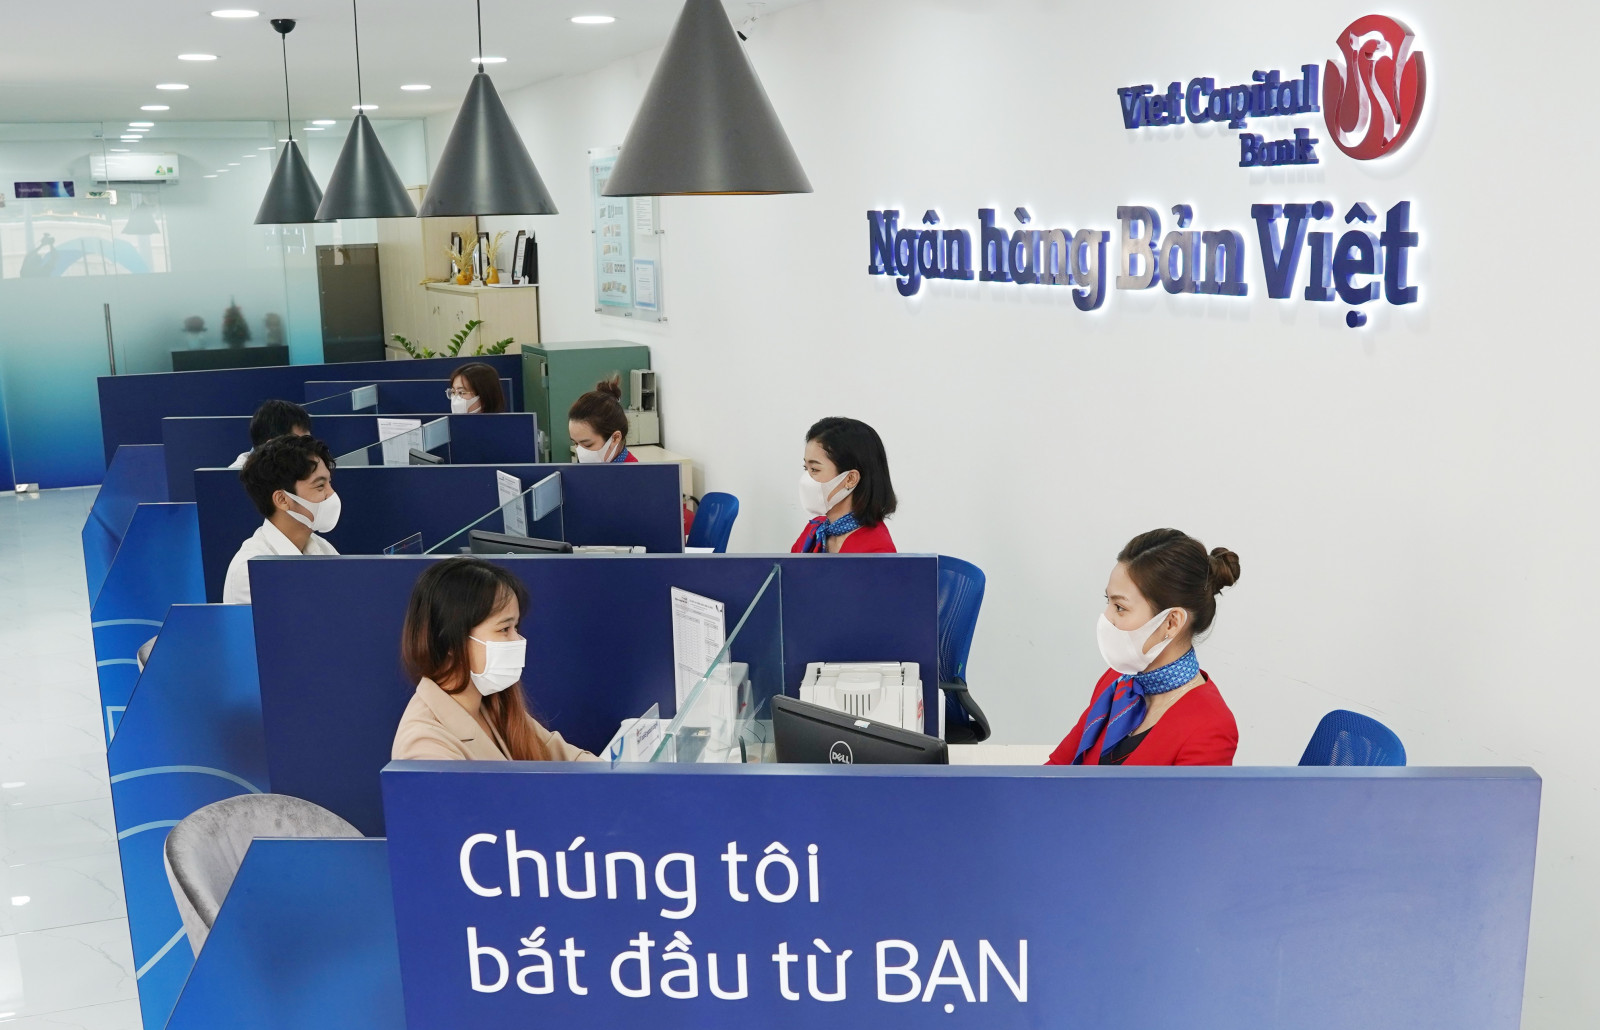 Lãi suất vay ngân hàng Bản Việt mới nhất 